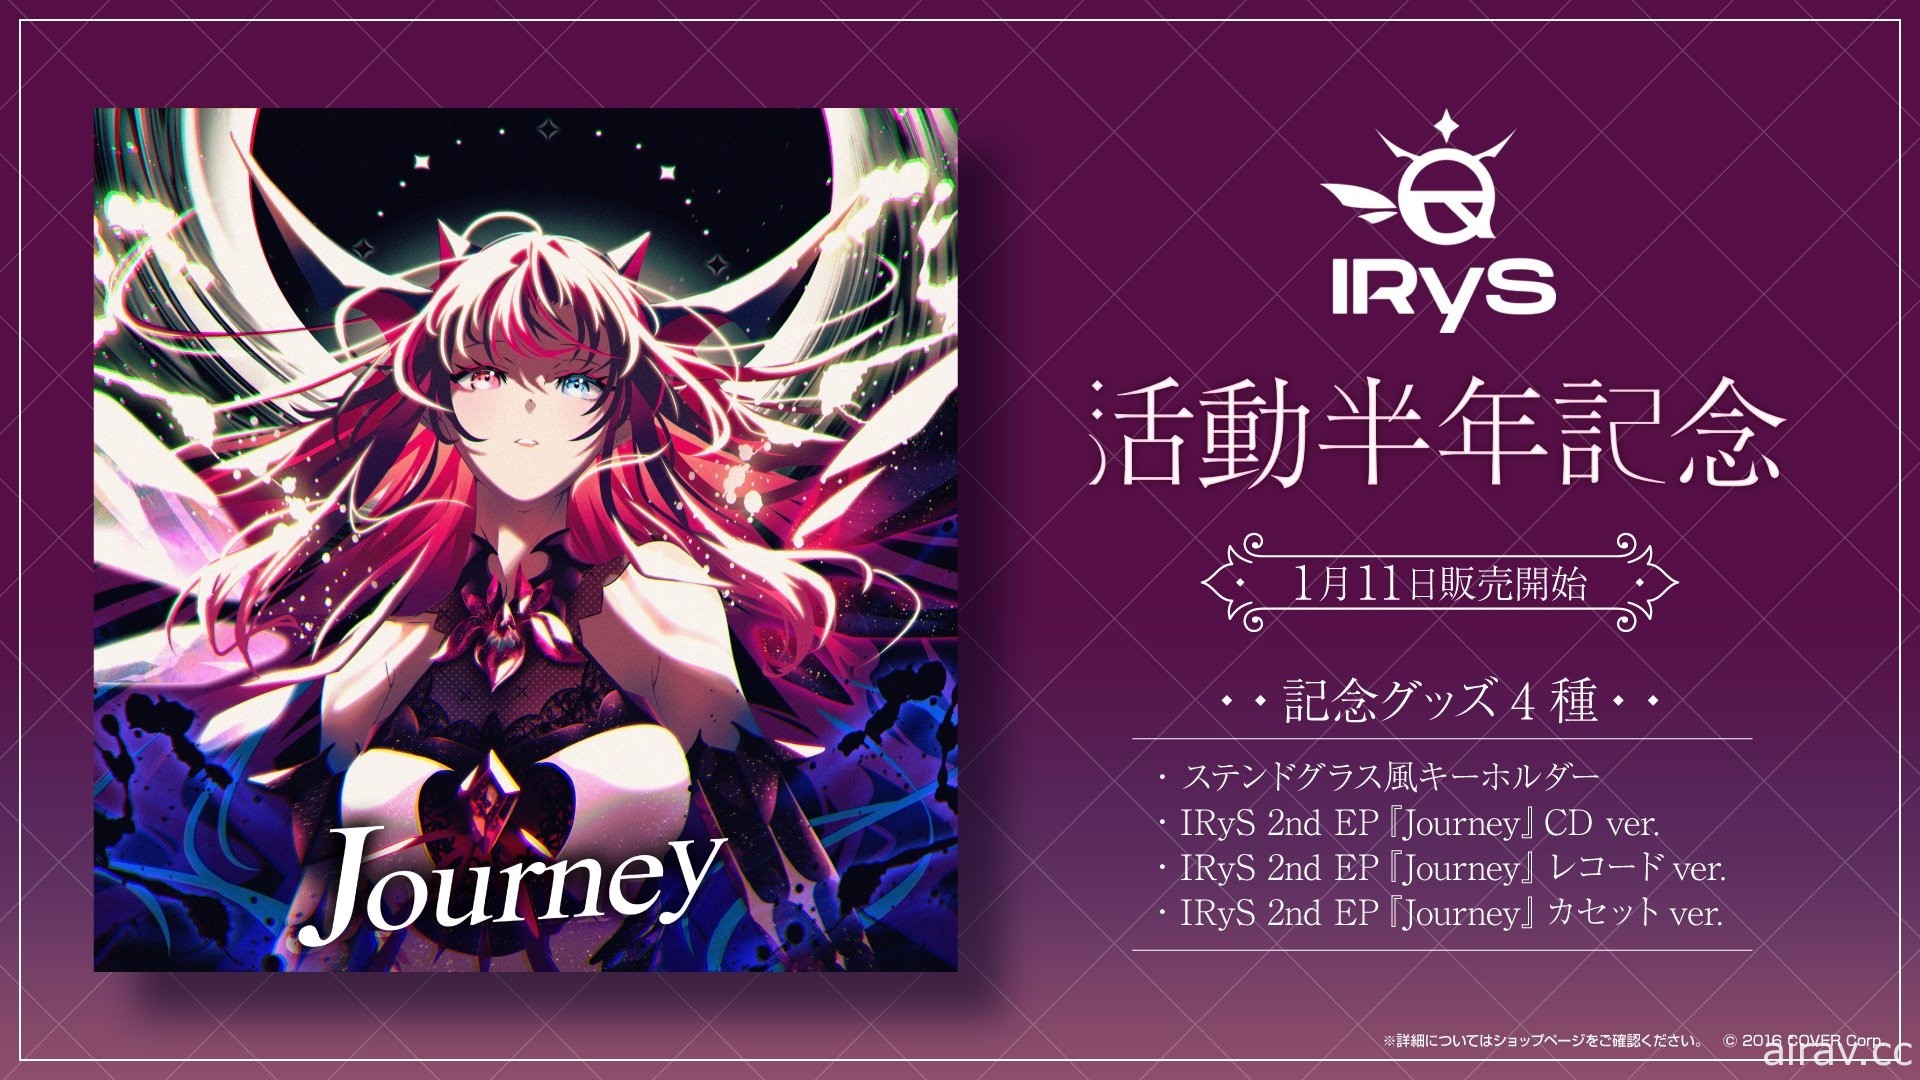 hololive EN 旗下 IRyS 宣布推出第二张迷你专辑“Journey”CD、黑胶、磁带将同步发行